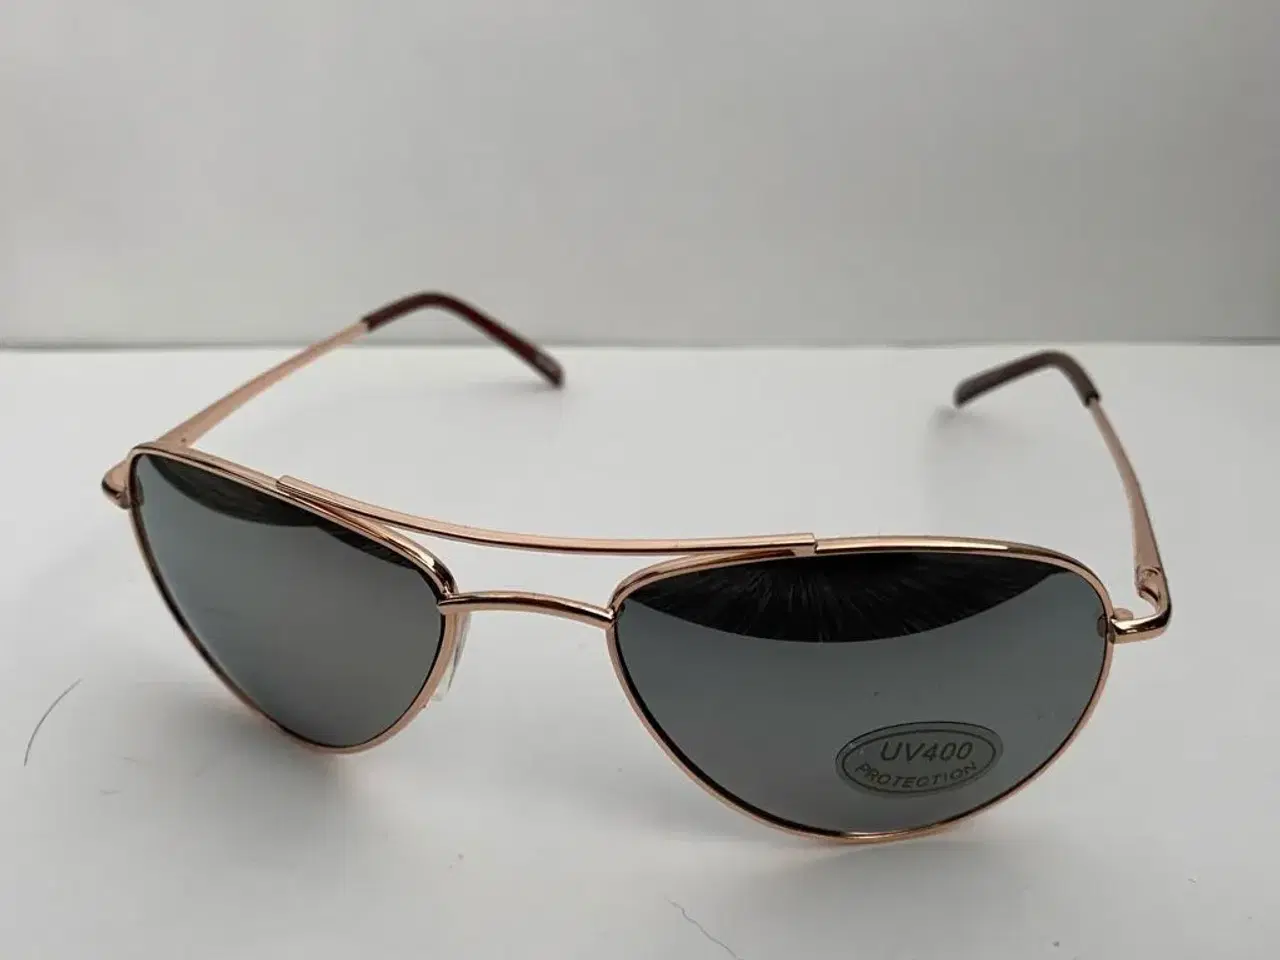 Billede 3 - Lækre solbriller